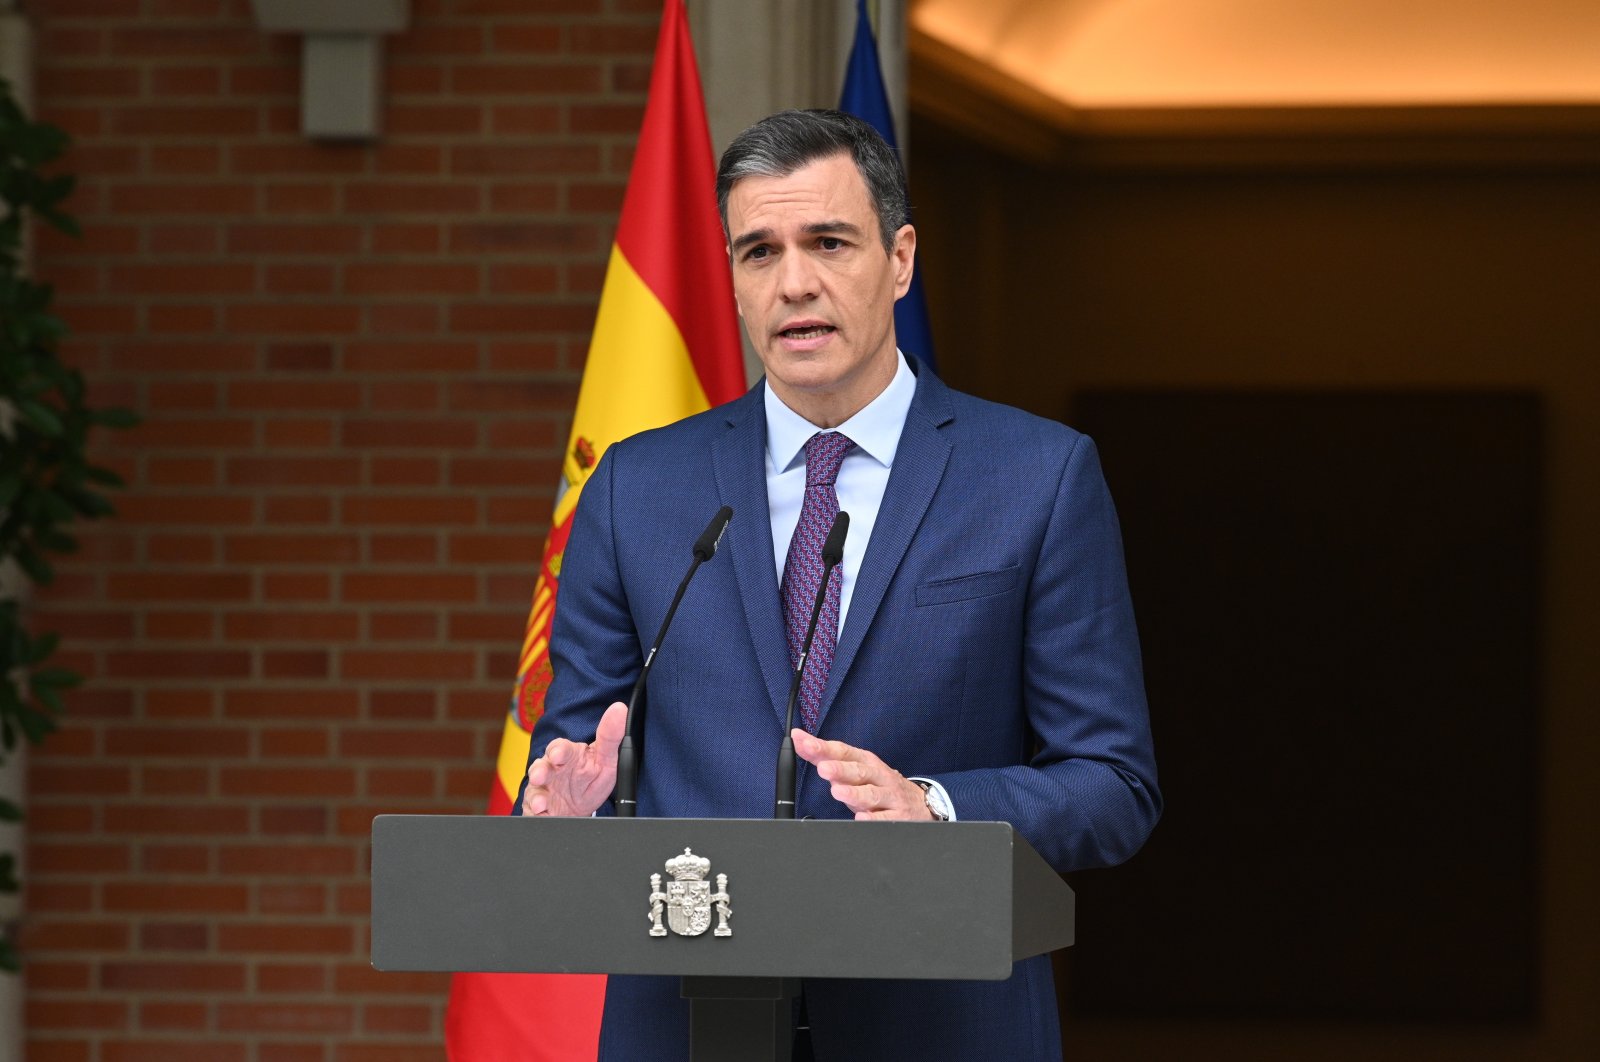 Pemerintah Spanyol menyerukan jajak pendapat setelah kalah besar dalam pemilihan lokal